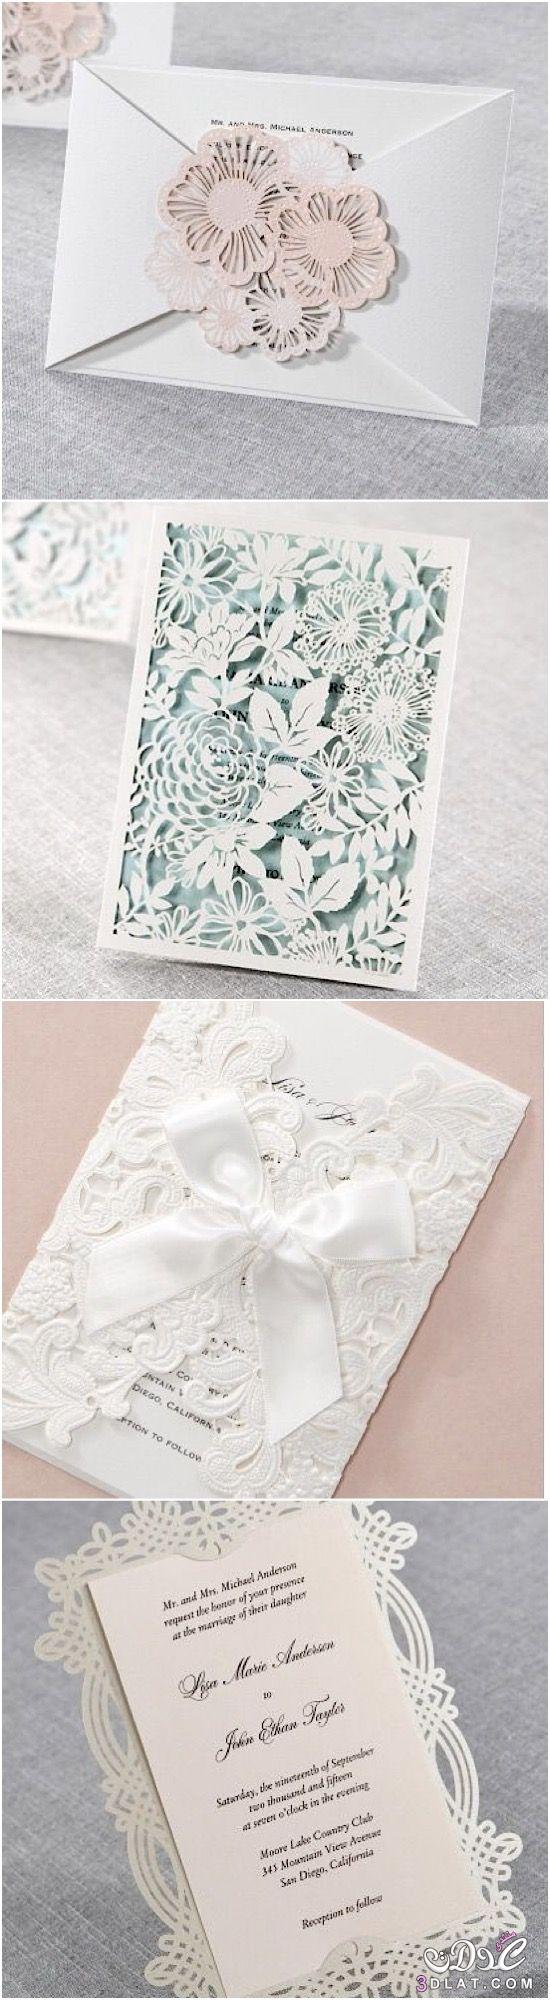 بطاقات للافراح بالوان جذابه ورائعه ، اجدد تصاميم بطاقات دعوات الزفاف باجمل اشكال